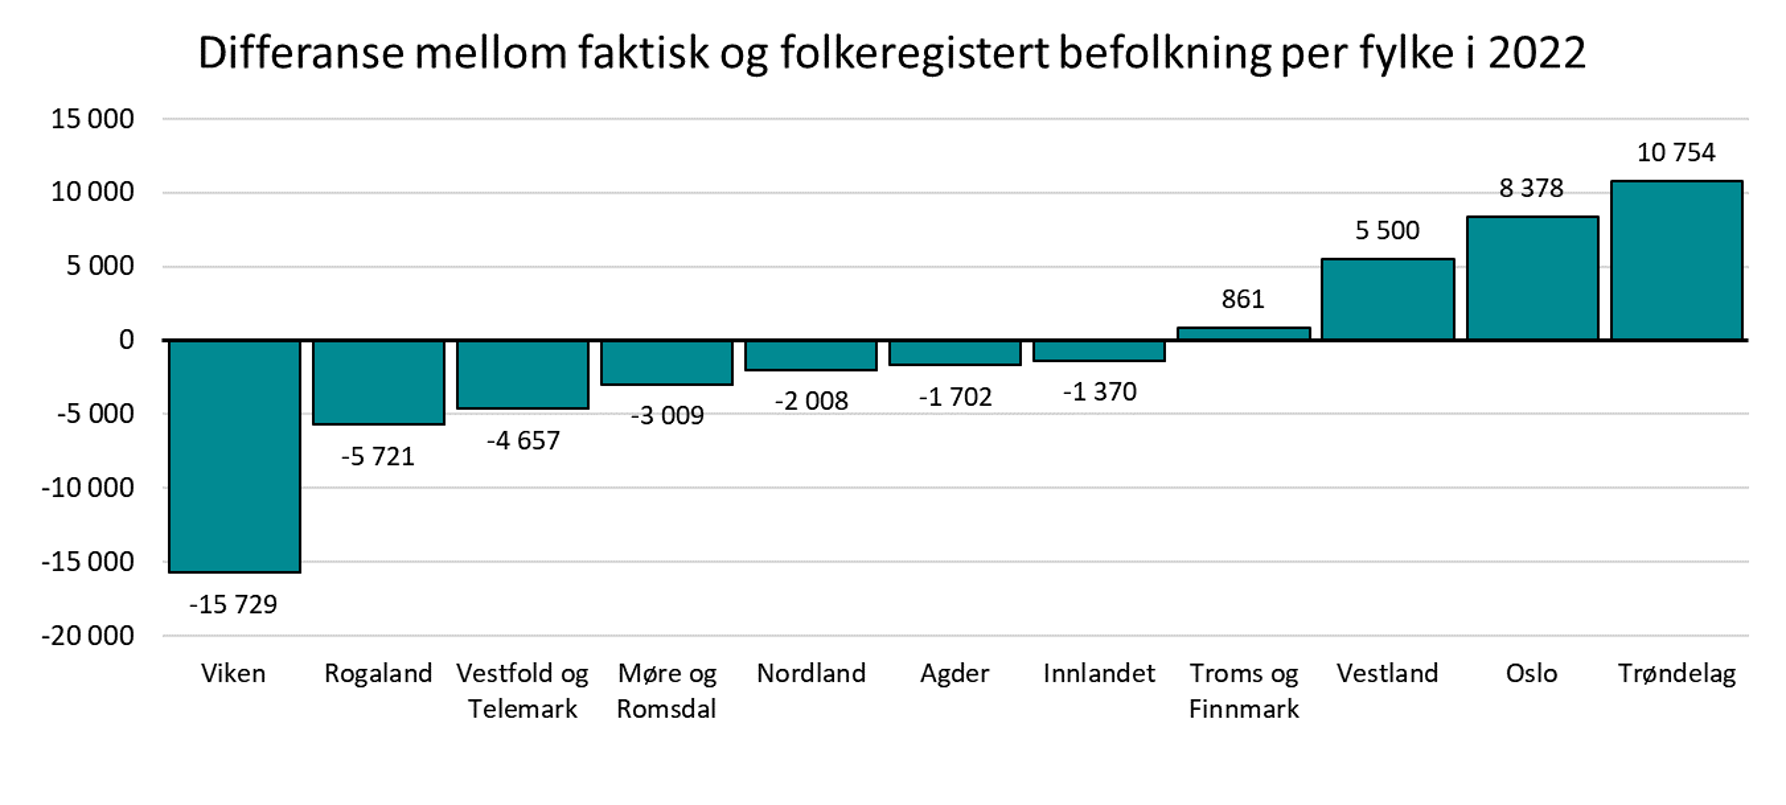 Differanse mellom faktisk og folkeregistert befolkning per fylke i 2022